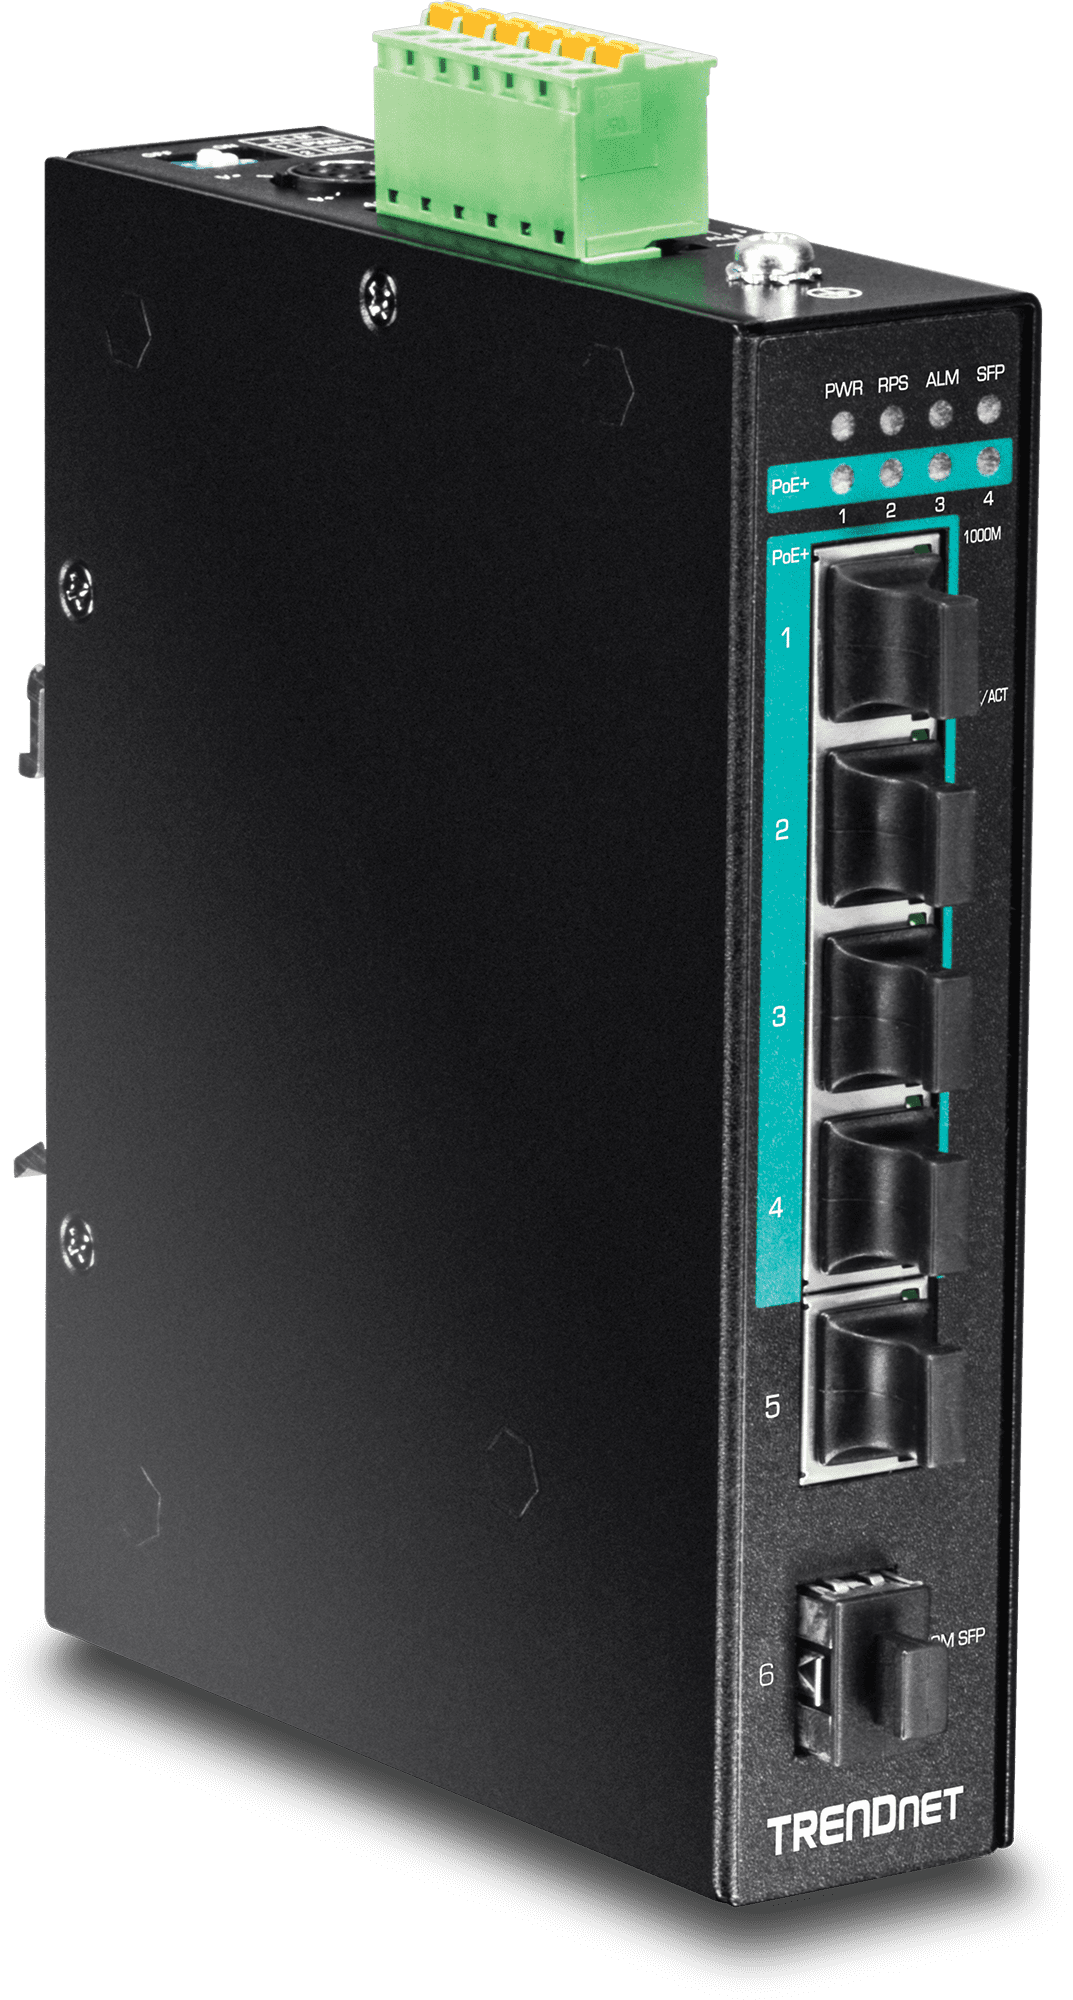 TRENDnet TI-PG541 5-port Hardened Industrial Gigabit PoE+ DIN-Rail Switch